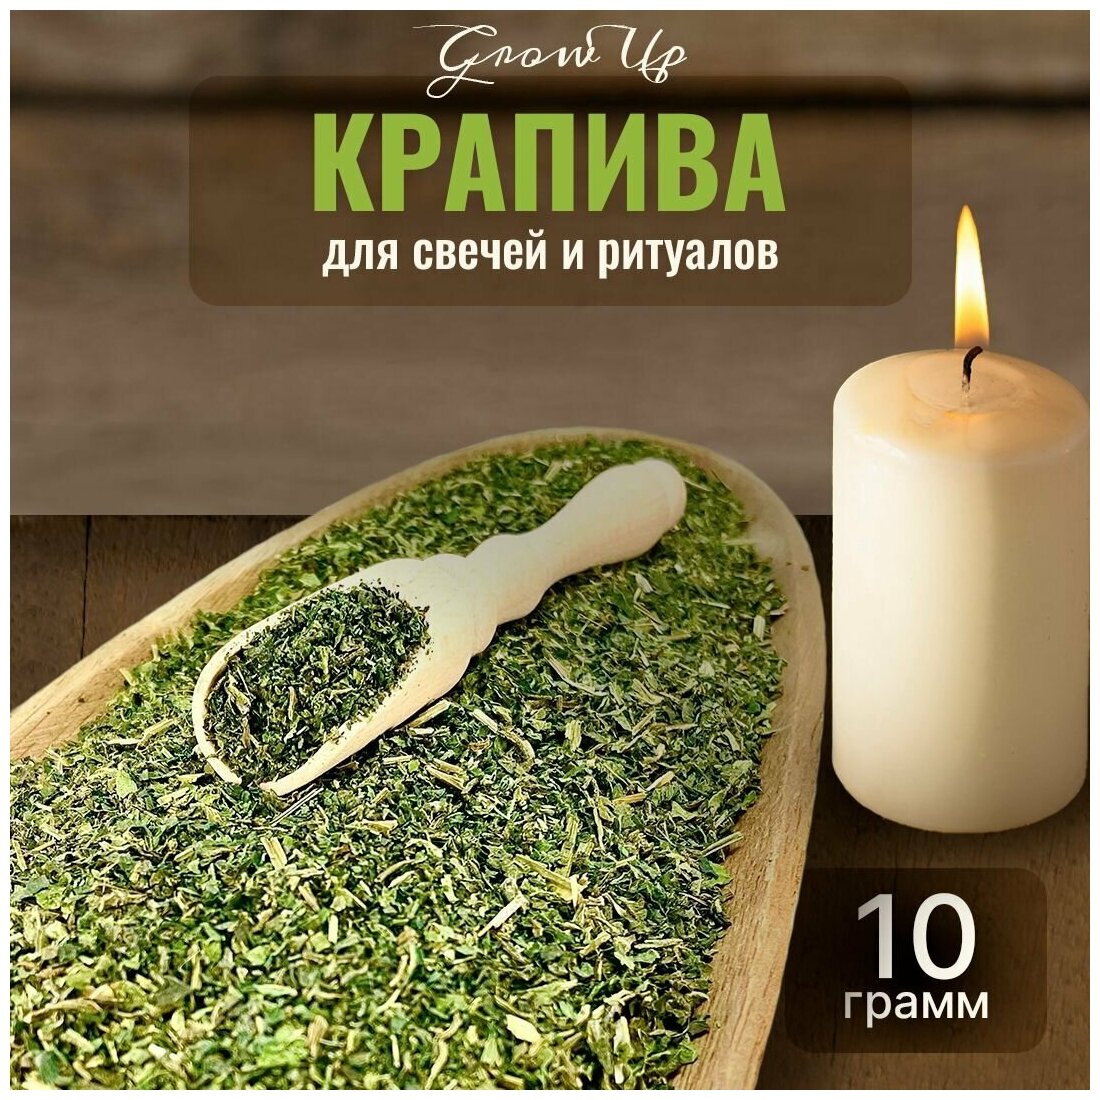 Сухая трава Крапива для свечей и ритуалов 10 гр